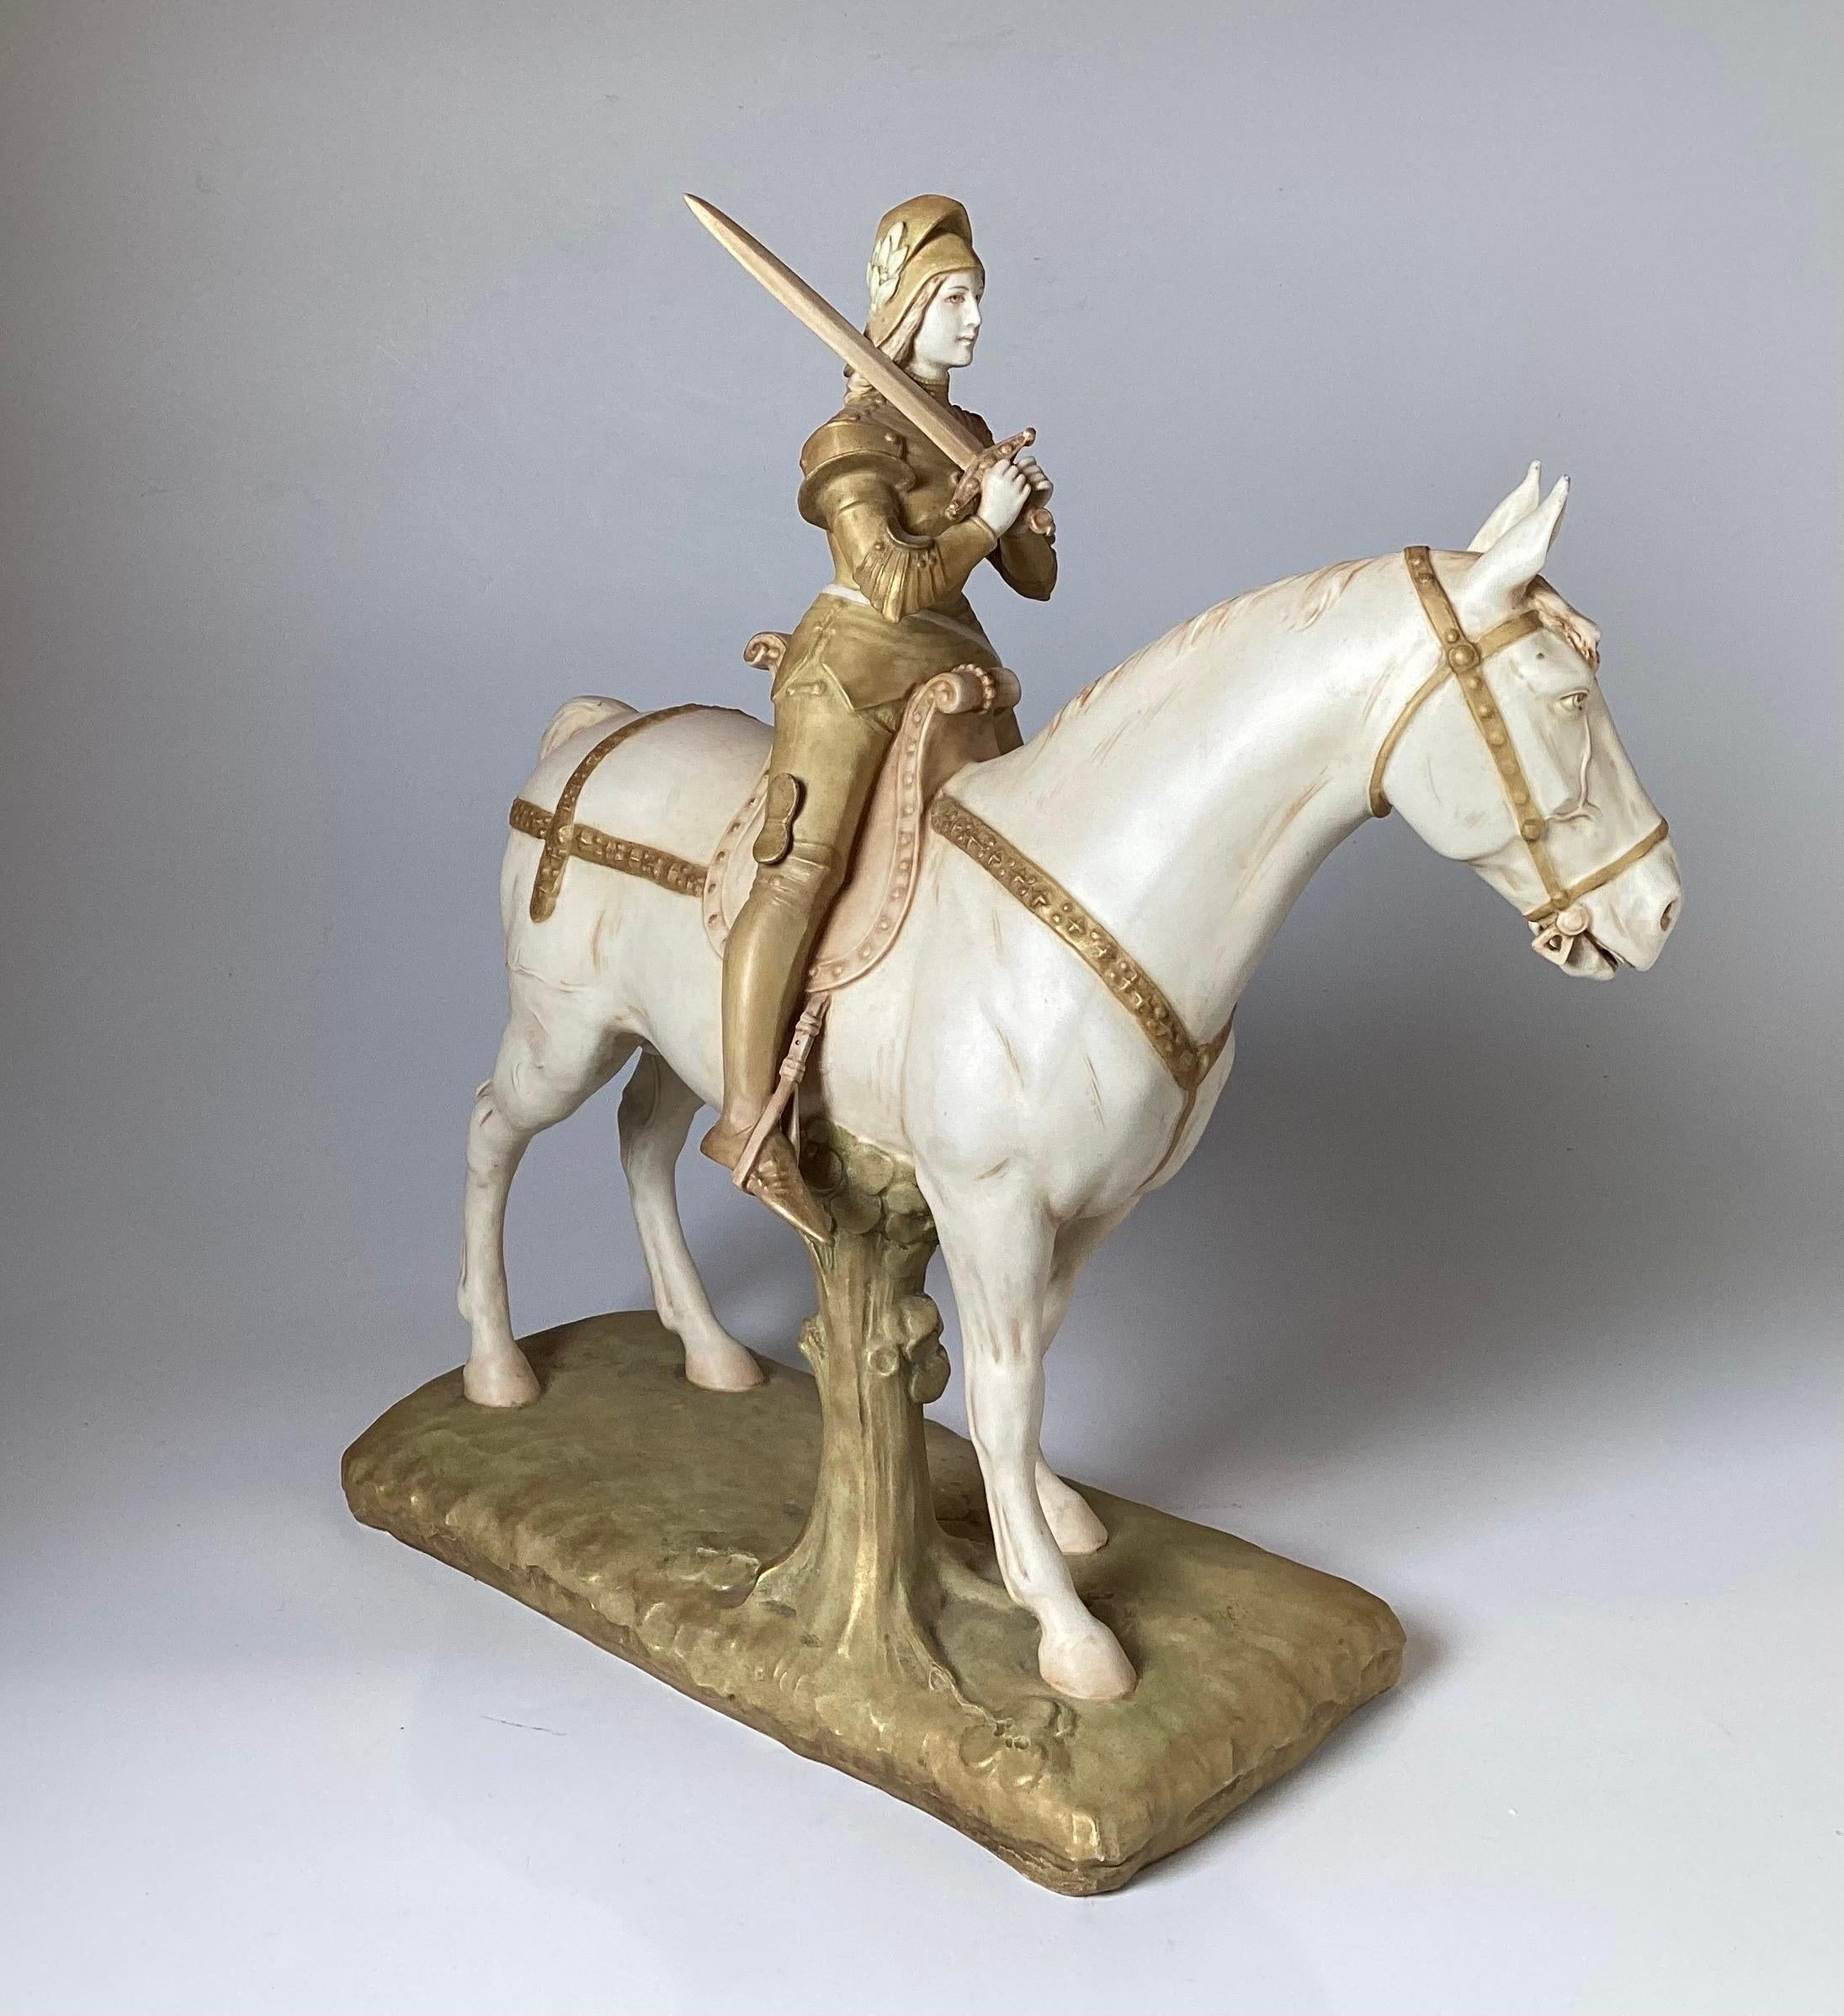 Austrian Unique Hand Painted Porcelain Figure of Joan of Arc Riding a Horse For Sale